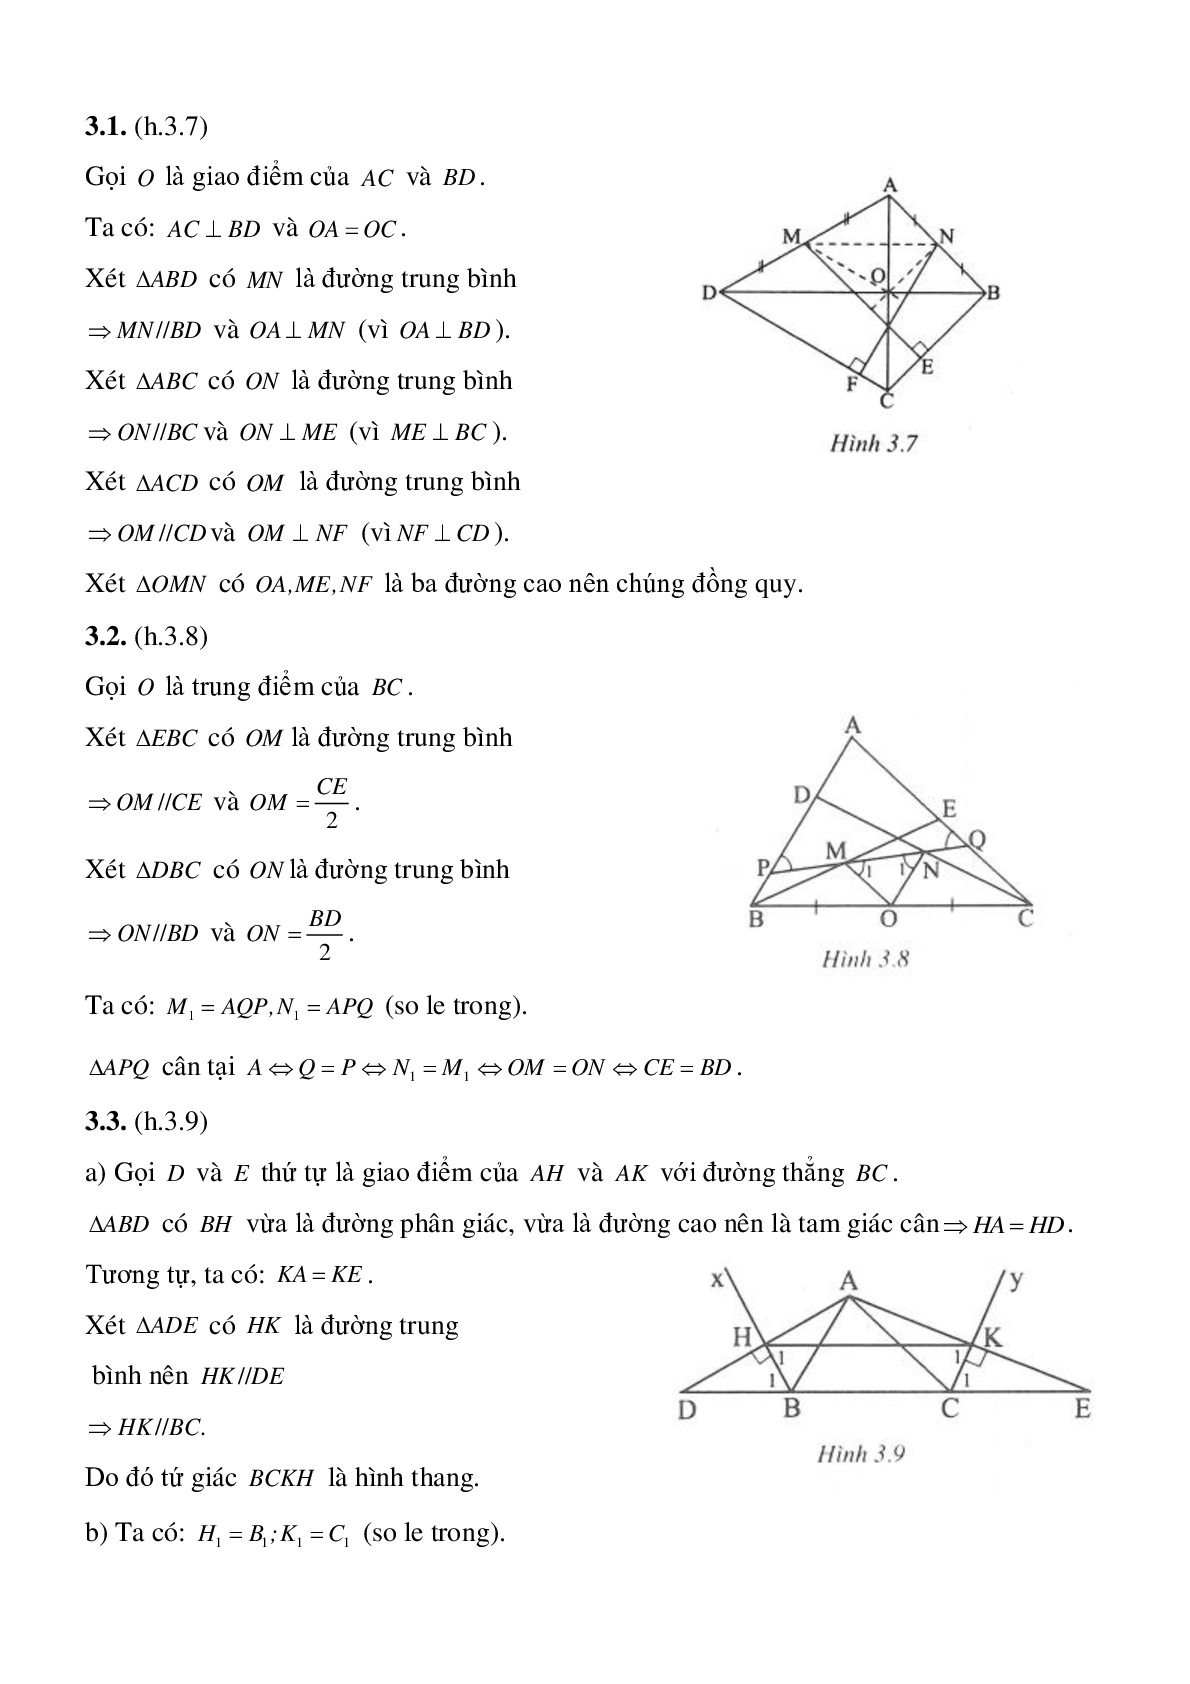 Đường trung bình của tam giác, của hình thang (trang 6)